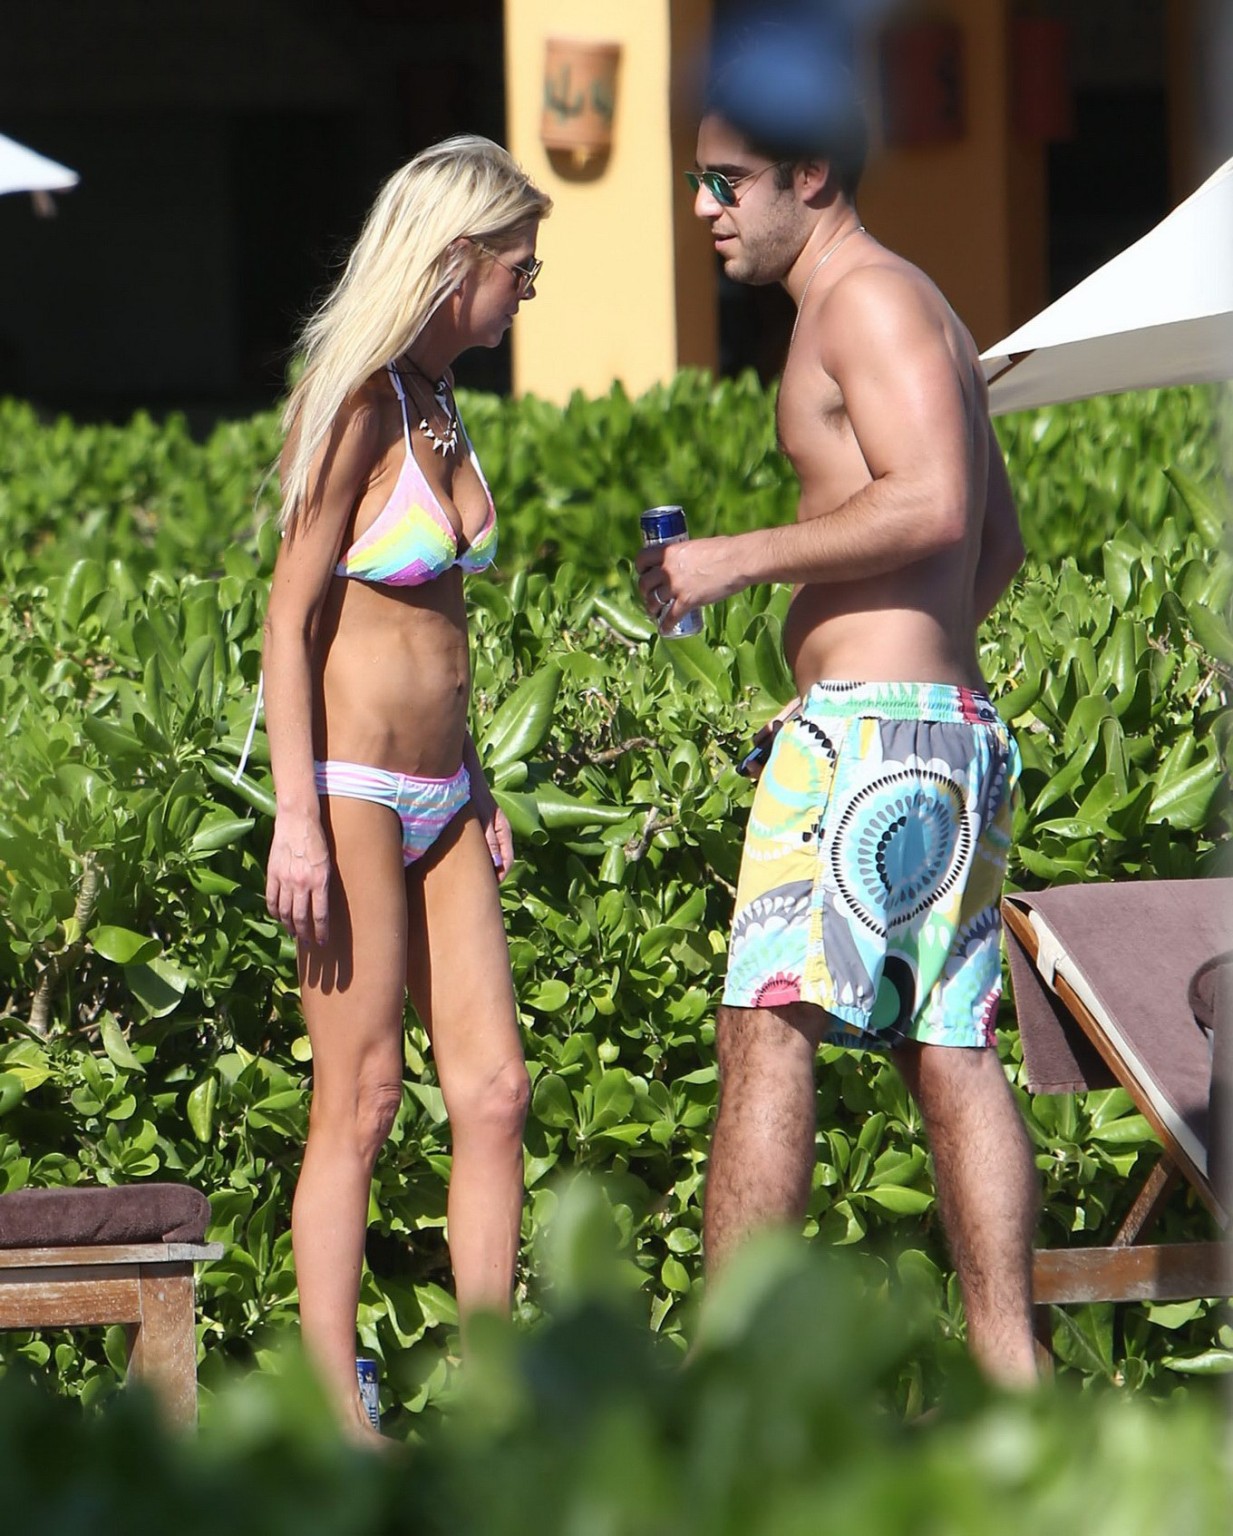 Tara reid indossa un bikini con stampa arcobaleno a bordo piscina alle Hawaii
 #75176659